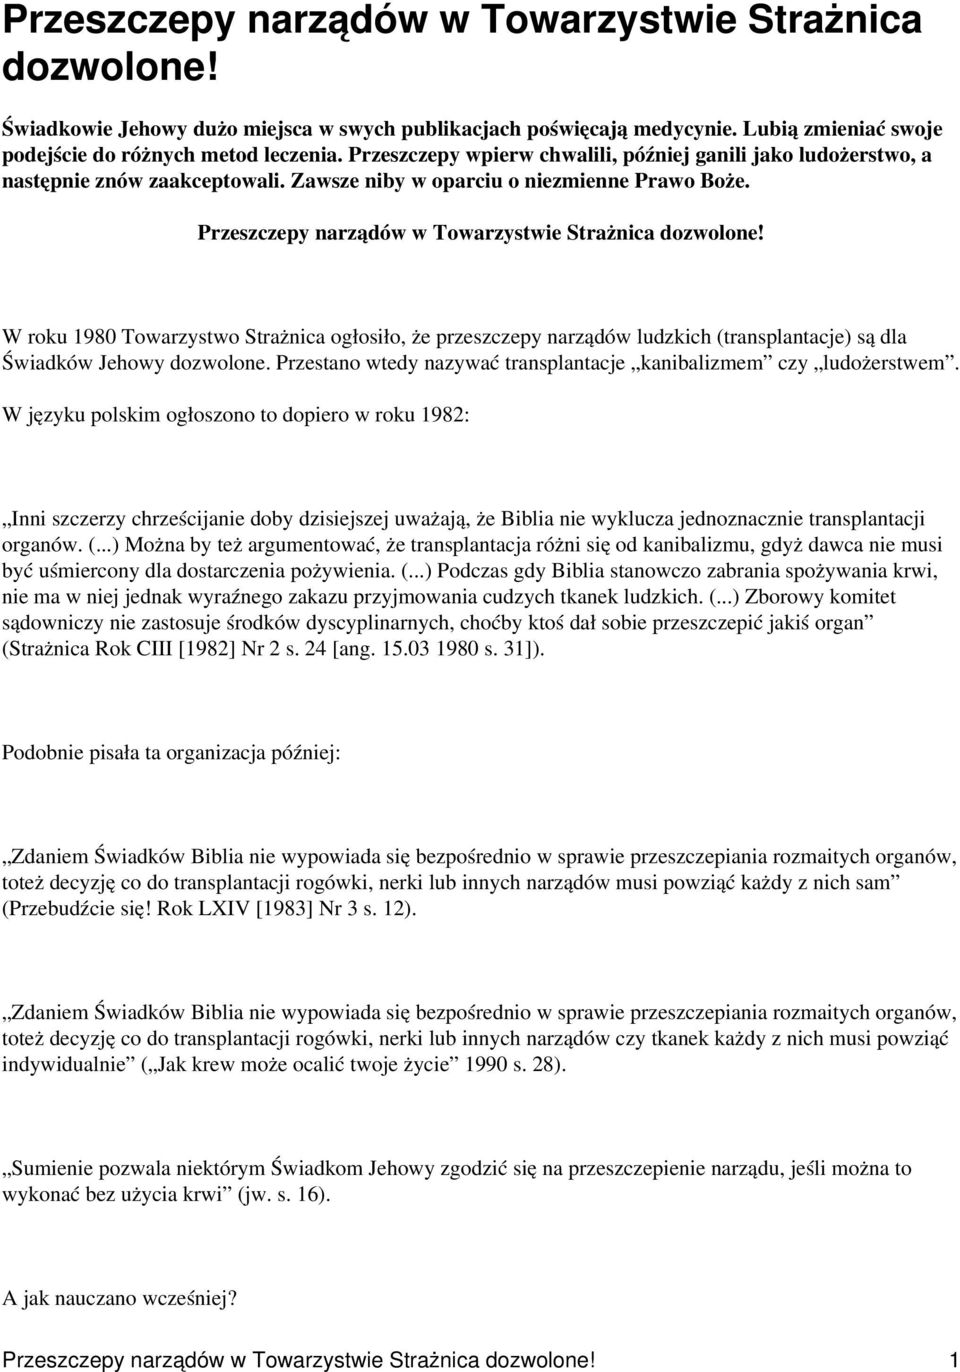 W roku 1980 Towarzystwo Strażnica ogłosiło, że przeszczepy narządów ludzkich (transplantacje) są dla Świadków Jehowy dozwolone. Przestano wtedy nazywać transplantacje kanibalizmem czy ludożerstwem.